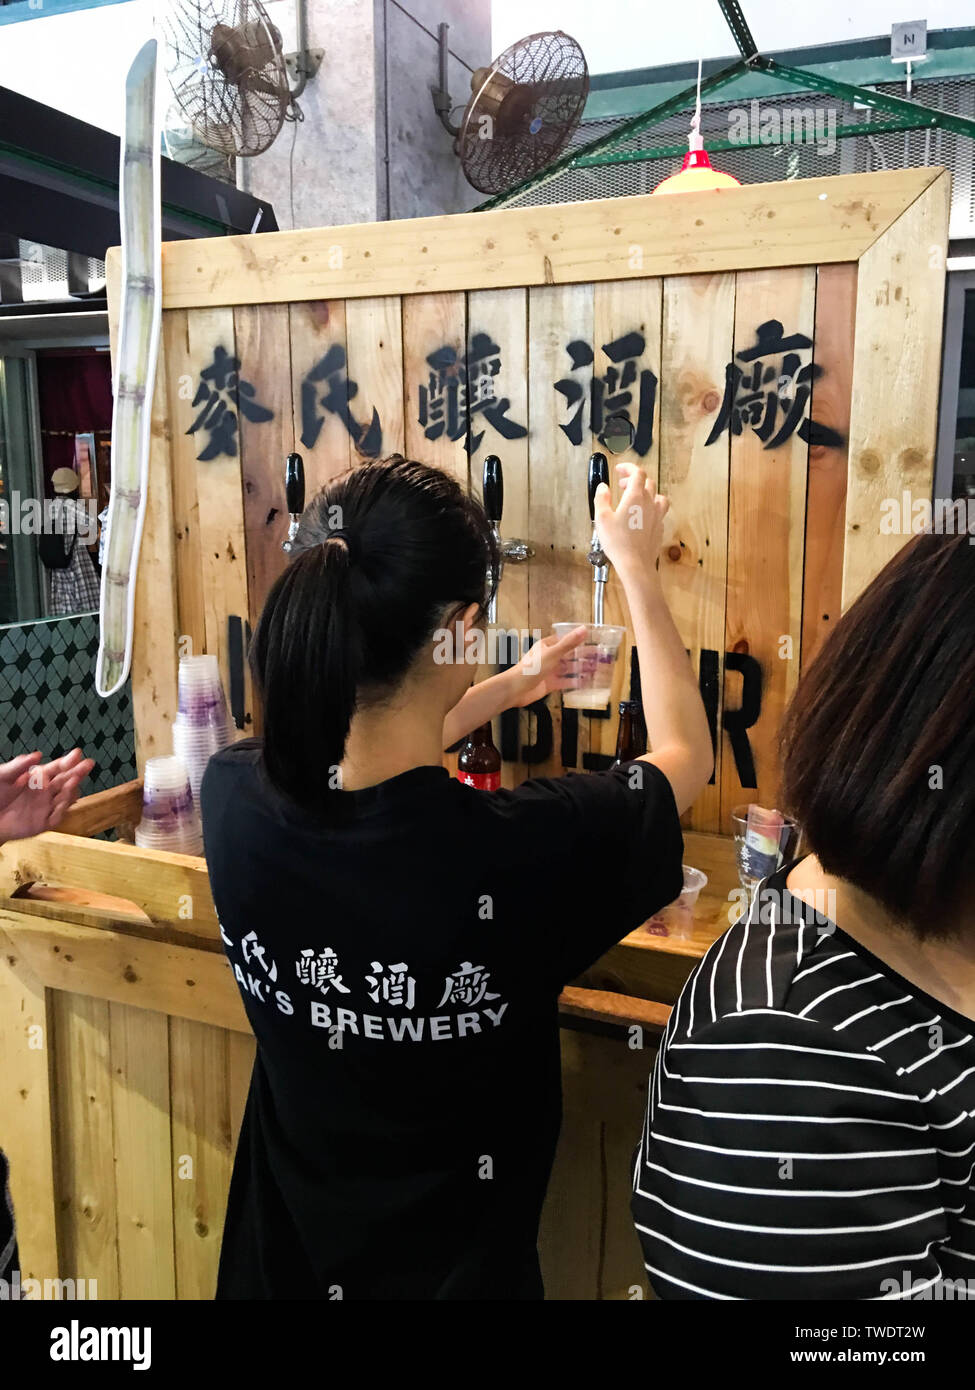 La Región Administrativa Especial de Hong Kong Parque Cultural y creativo, Chuang Yuan Fang, es una pequeña capital, nostálgico, literario y artístico de paraíso. Por supuesto, también hay cocina y obras de arte hechas a mano llena de sabor antiguo Hong Kong. Foto de stock